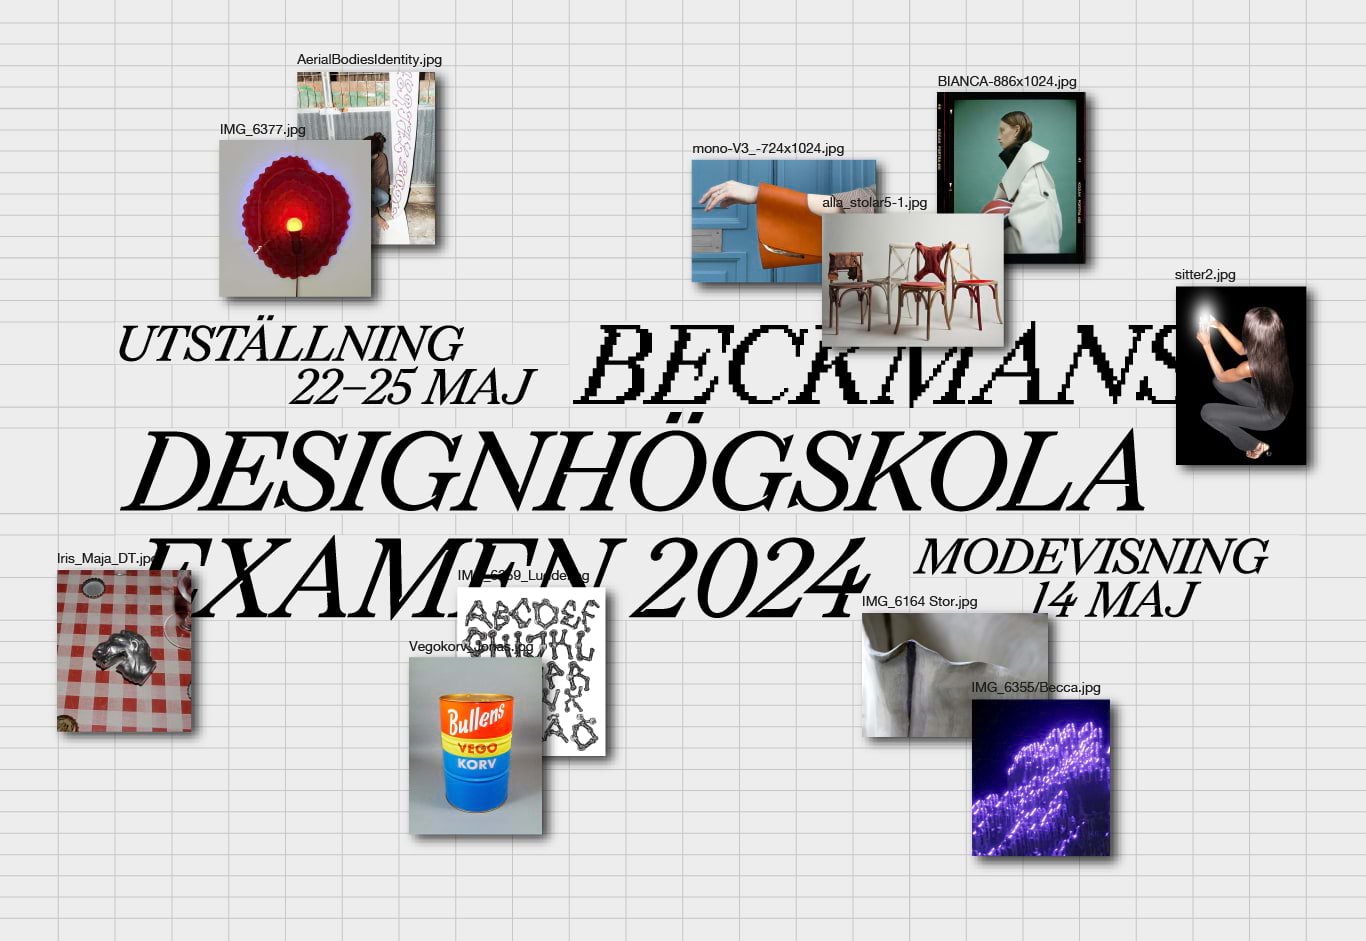 Examensutställning på Beckmans Designhögskola